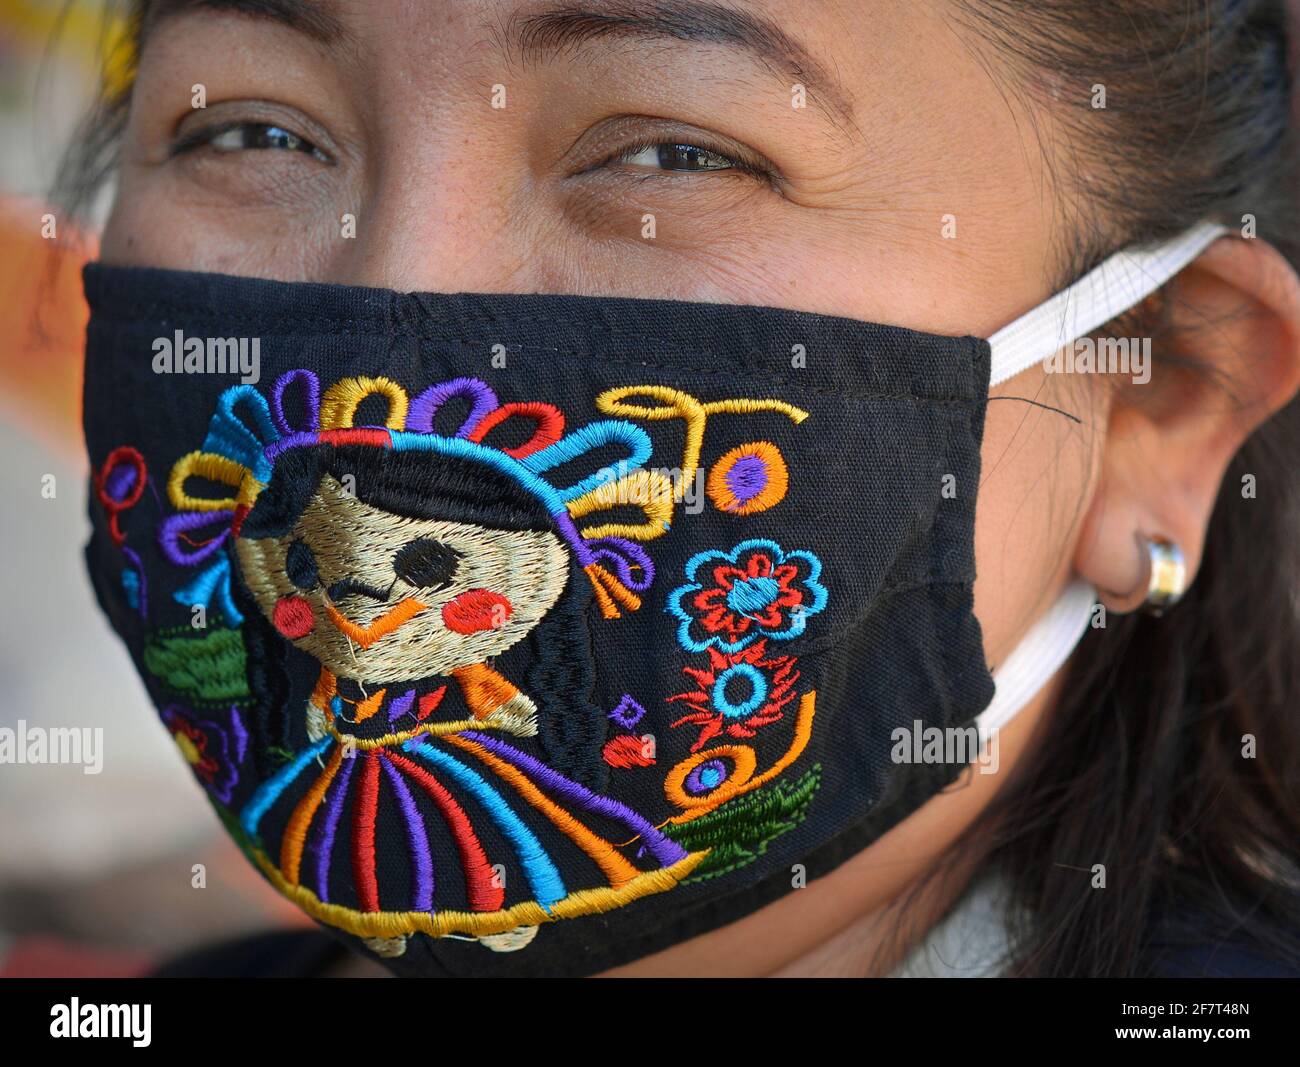 Une femme mexicaine aux yeux souriants porte un masque en tissu brodé lavable et coloré et regarde la caméra, pendant la pandémie mondiale du coronavirus. Banque D'Images